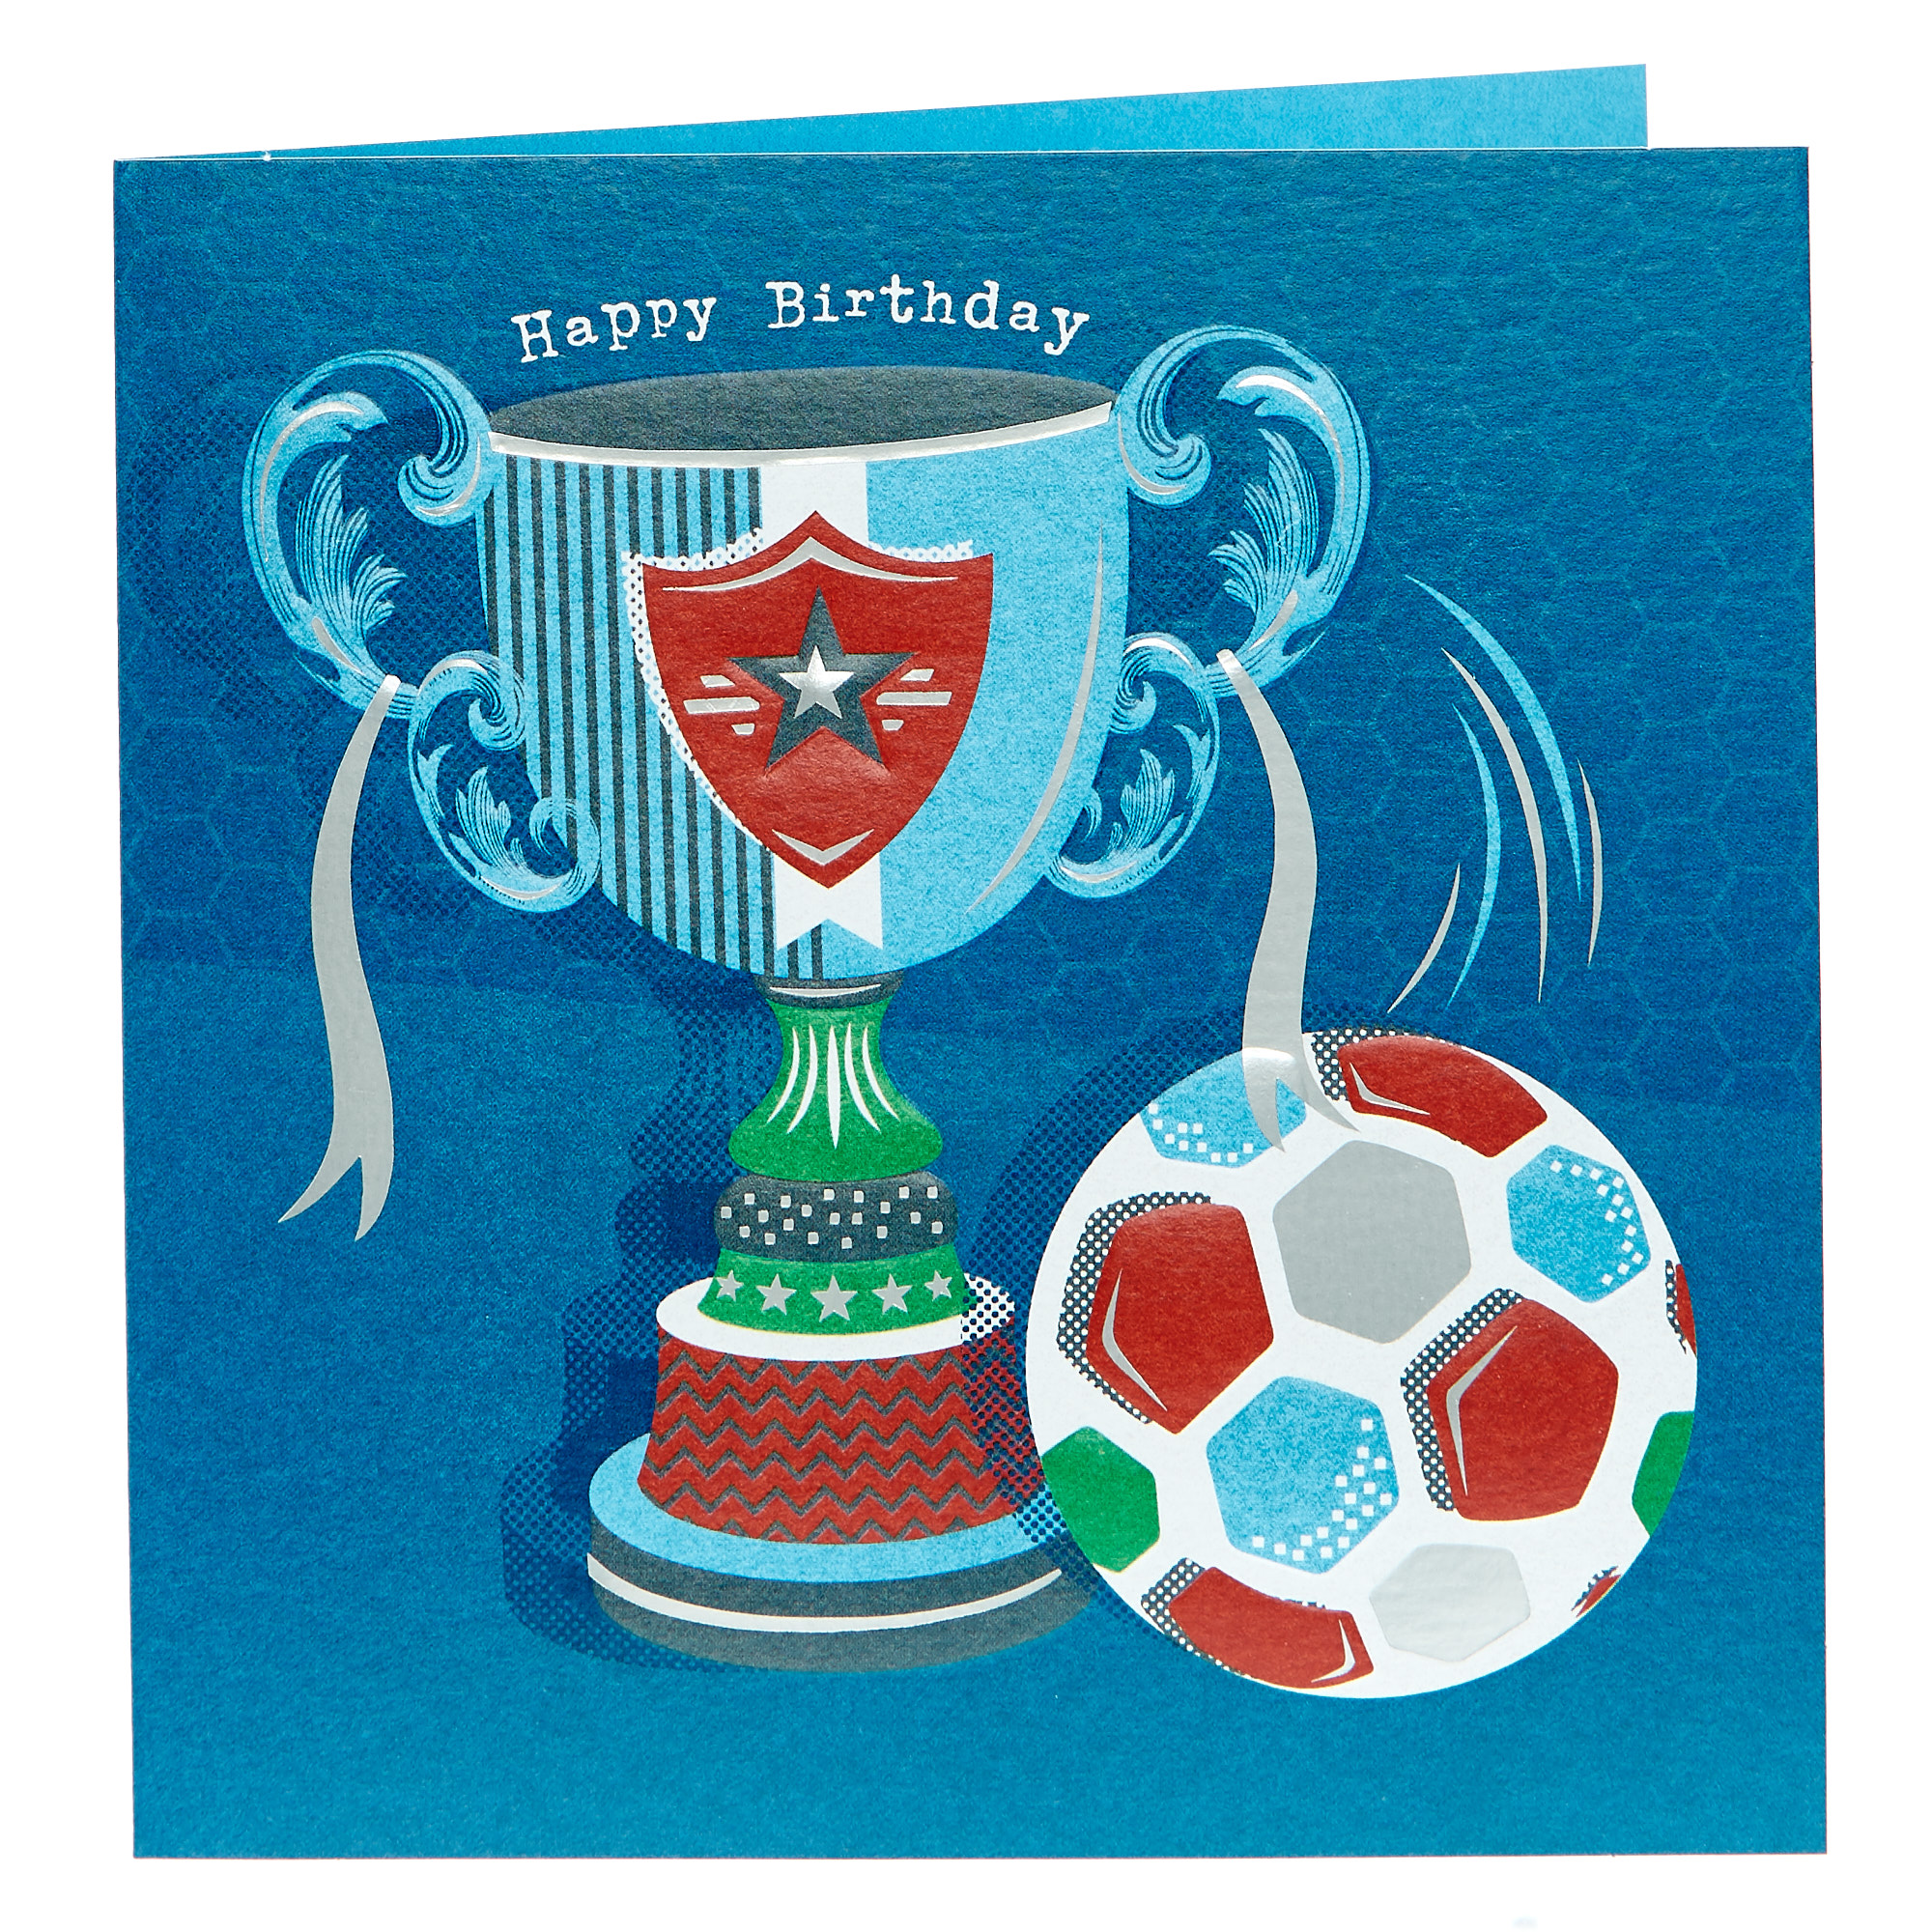 Birthday Card - Football Trophy